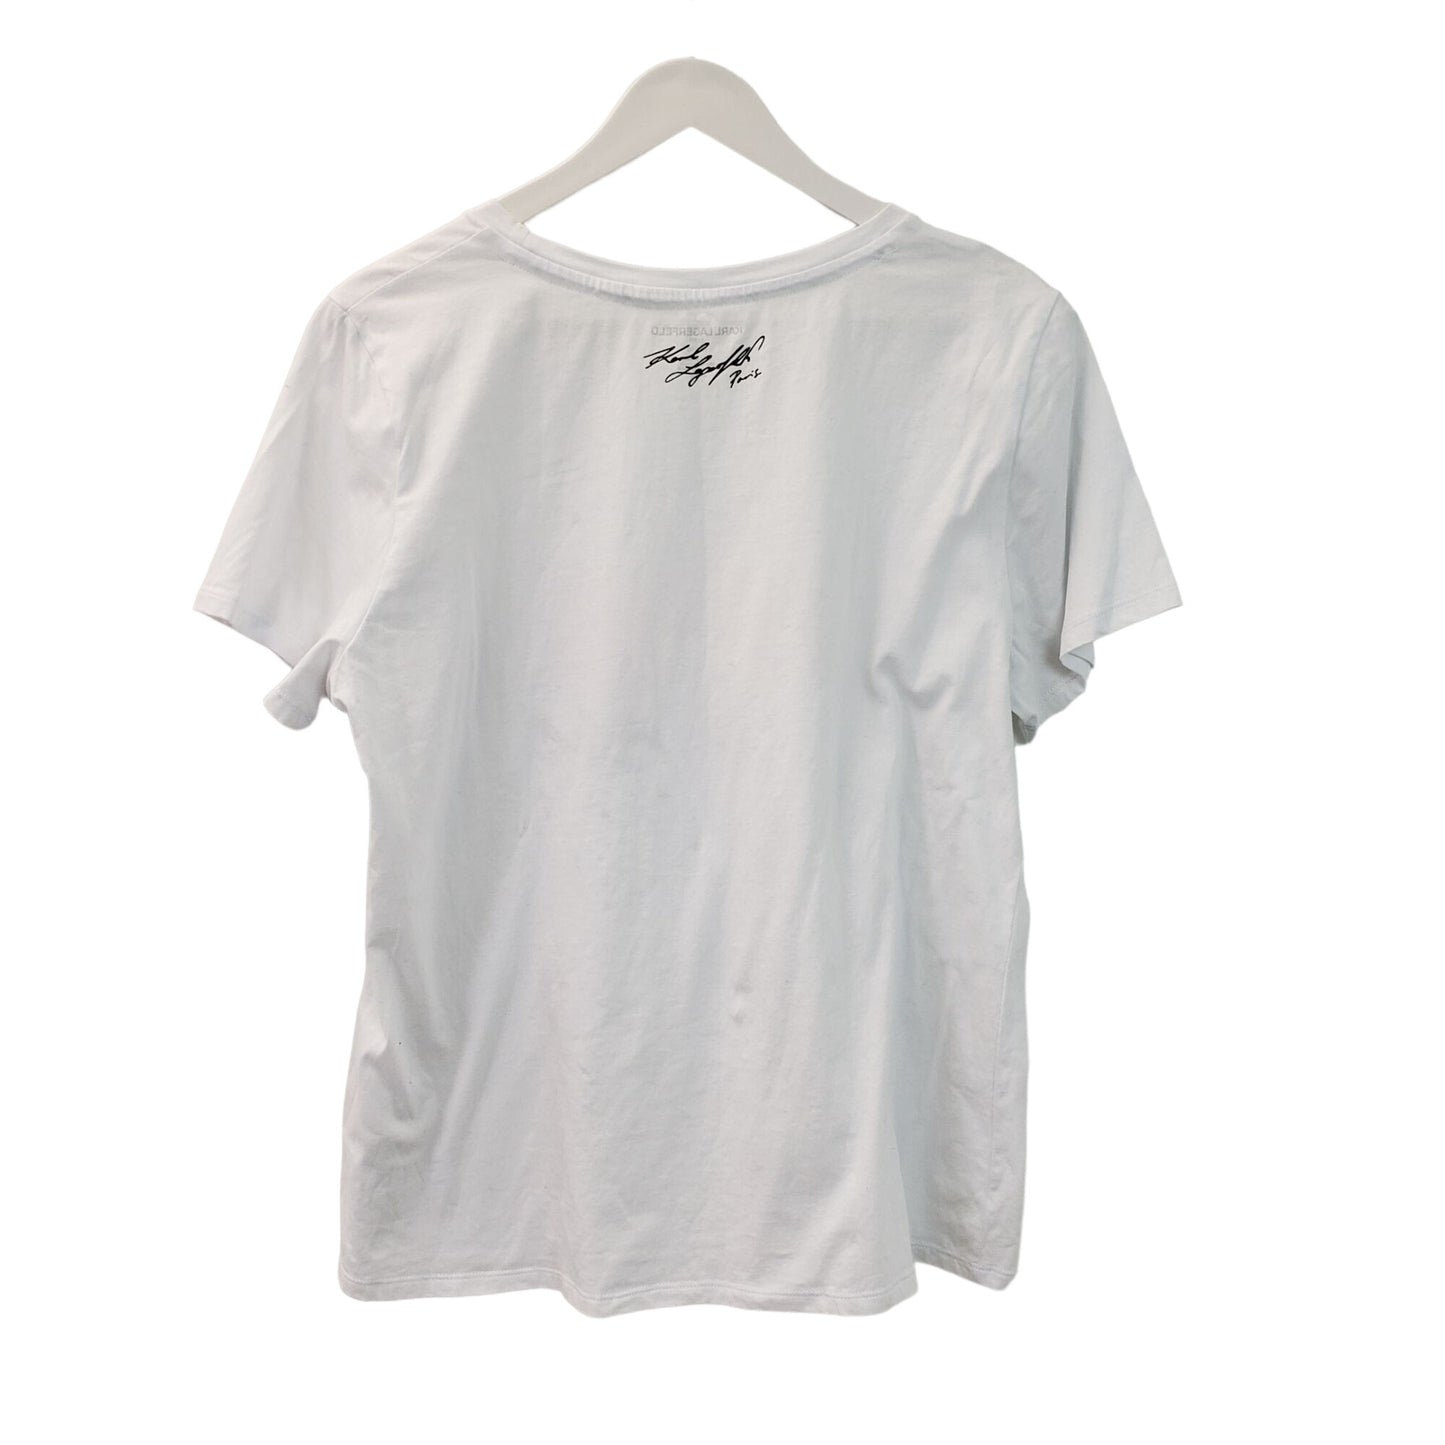 Karl Lagerfeld Floral Sunglass Print T-Shirt Size M/L